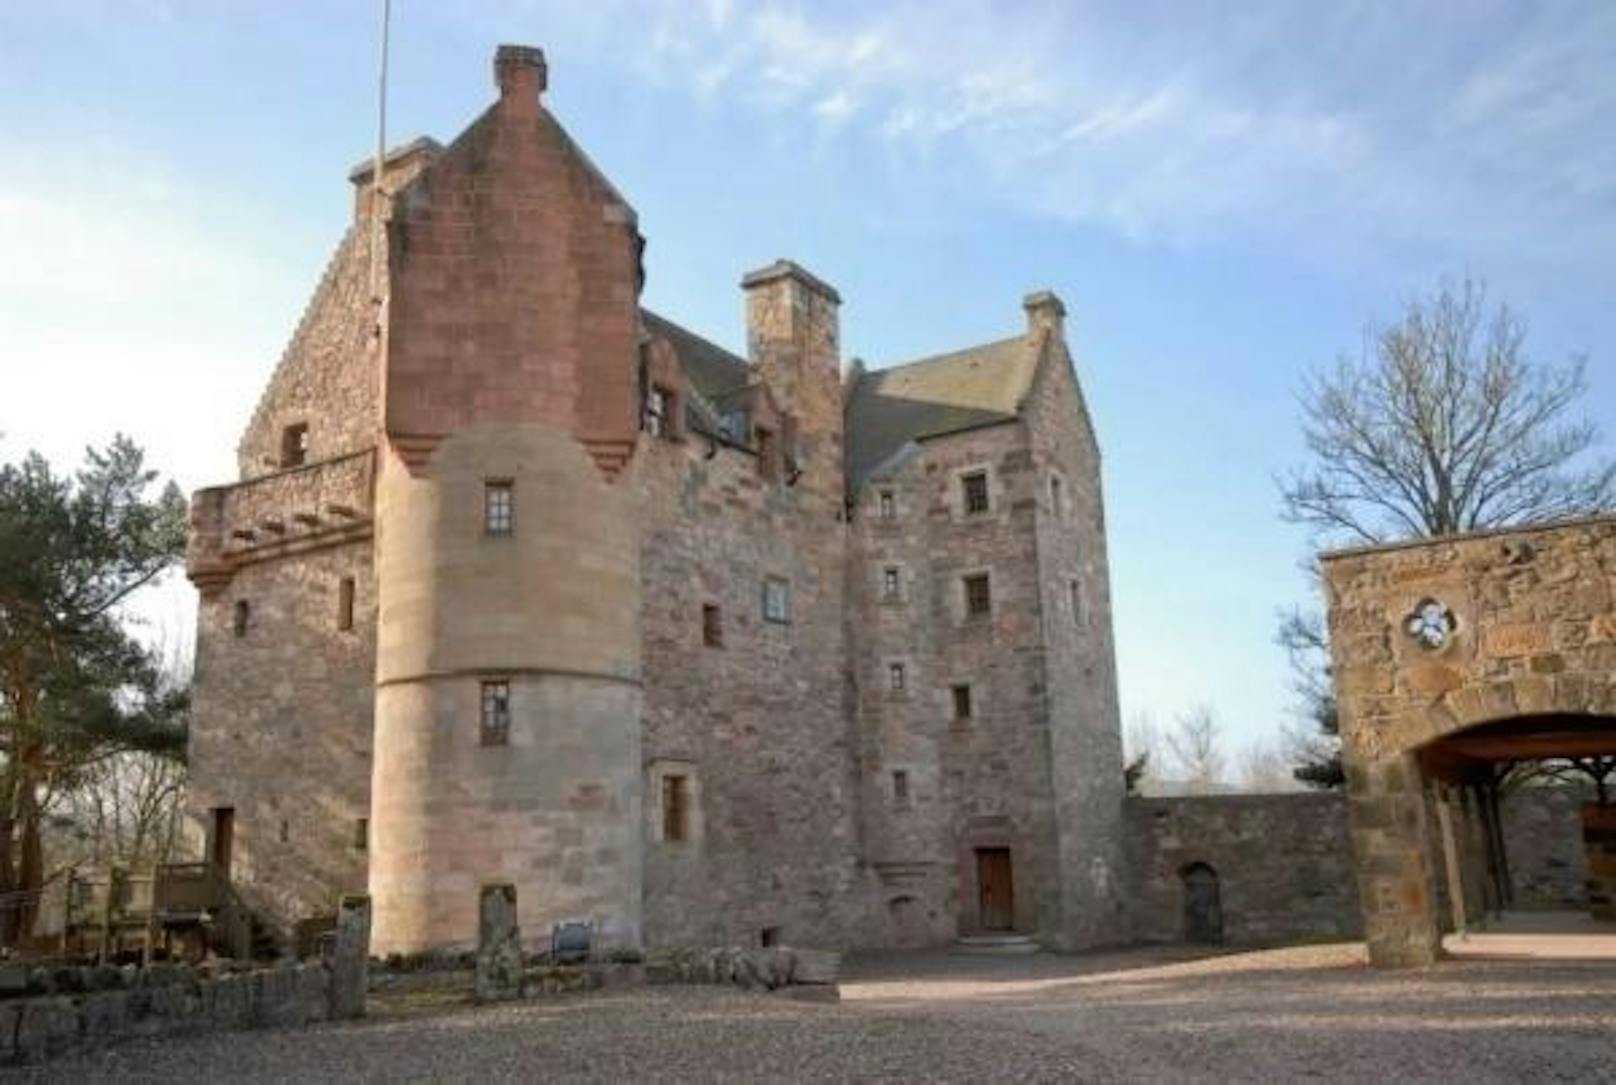 <b>Dairsie Castle, Fife, Schottland</b>
Dieses Schloss steht in Fife (gälisch Fìobha), einer von 32 sogenannten Council Areas in Schottland.